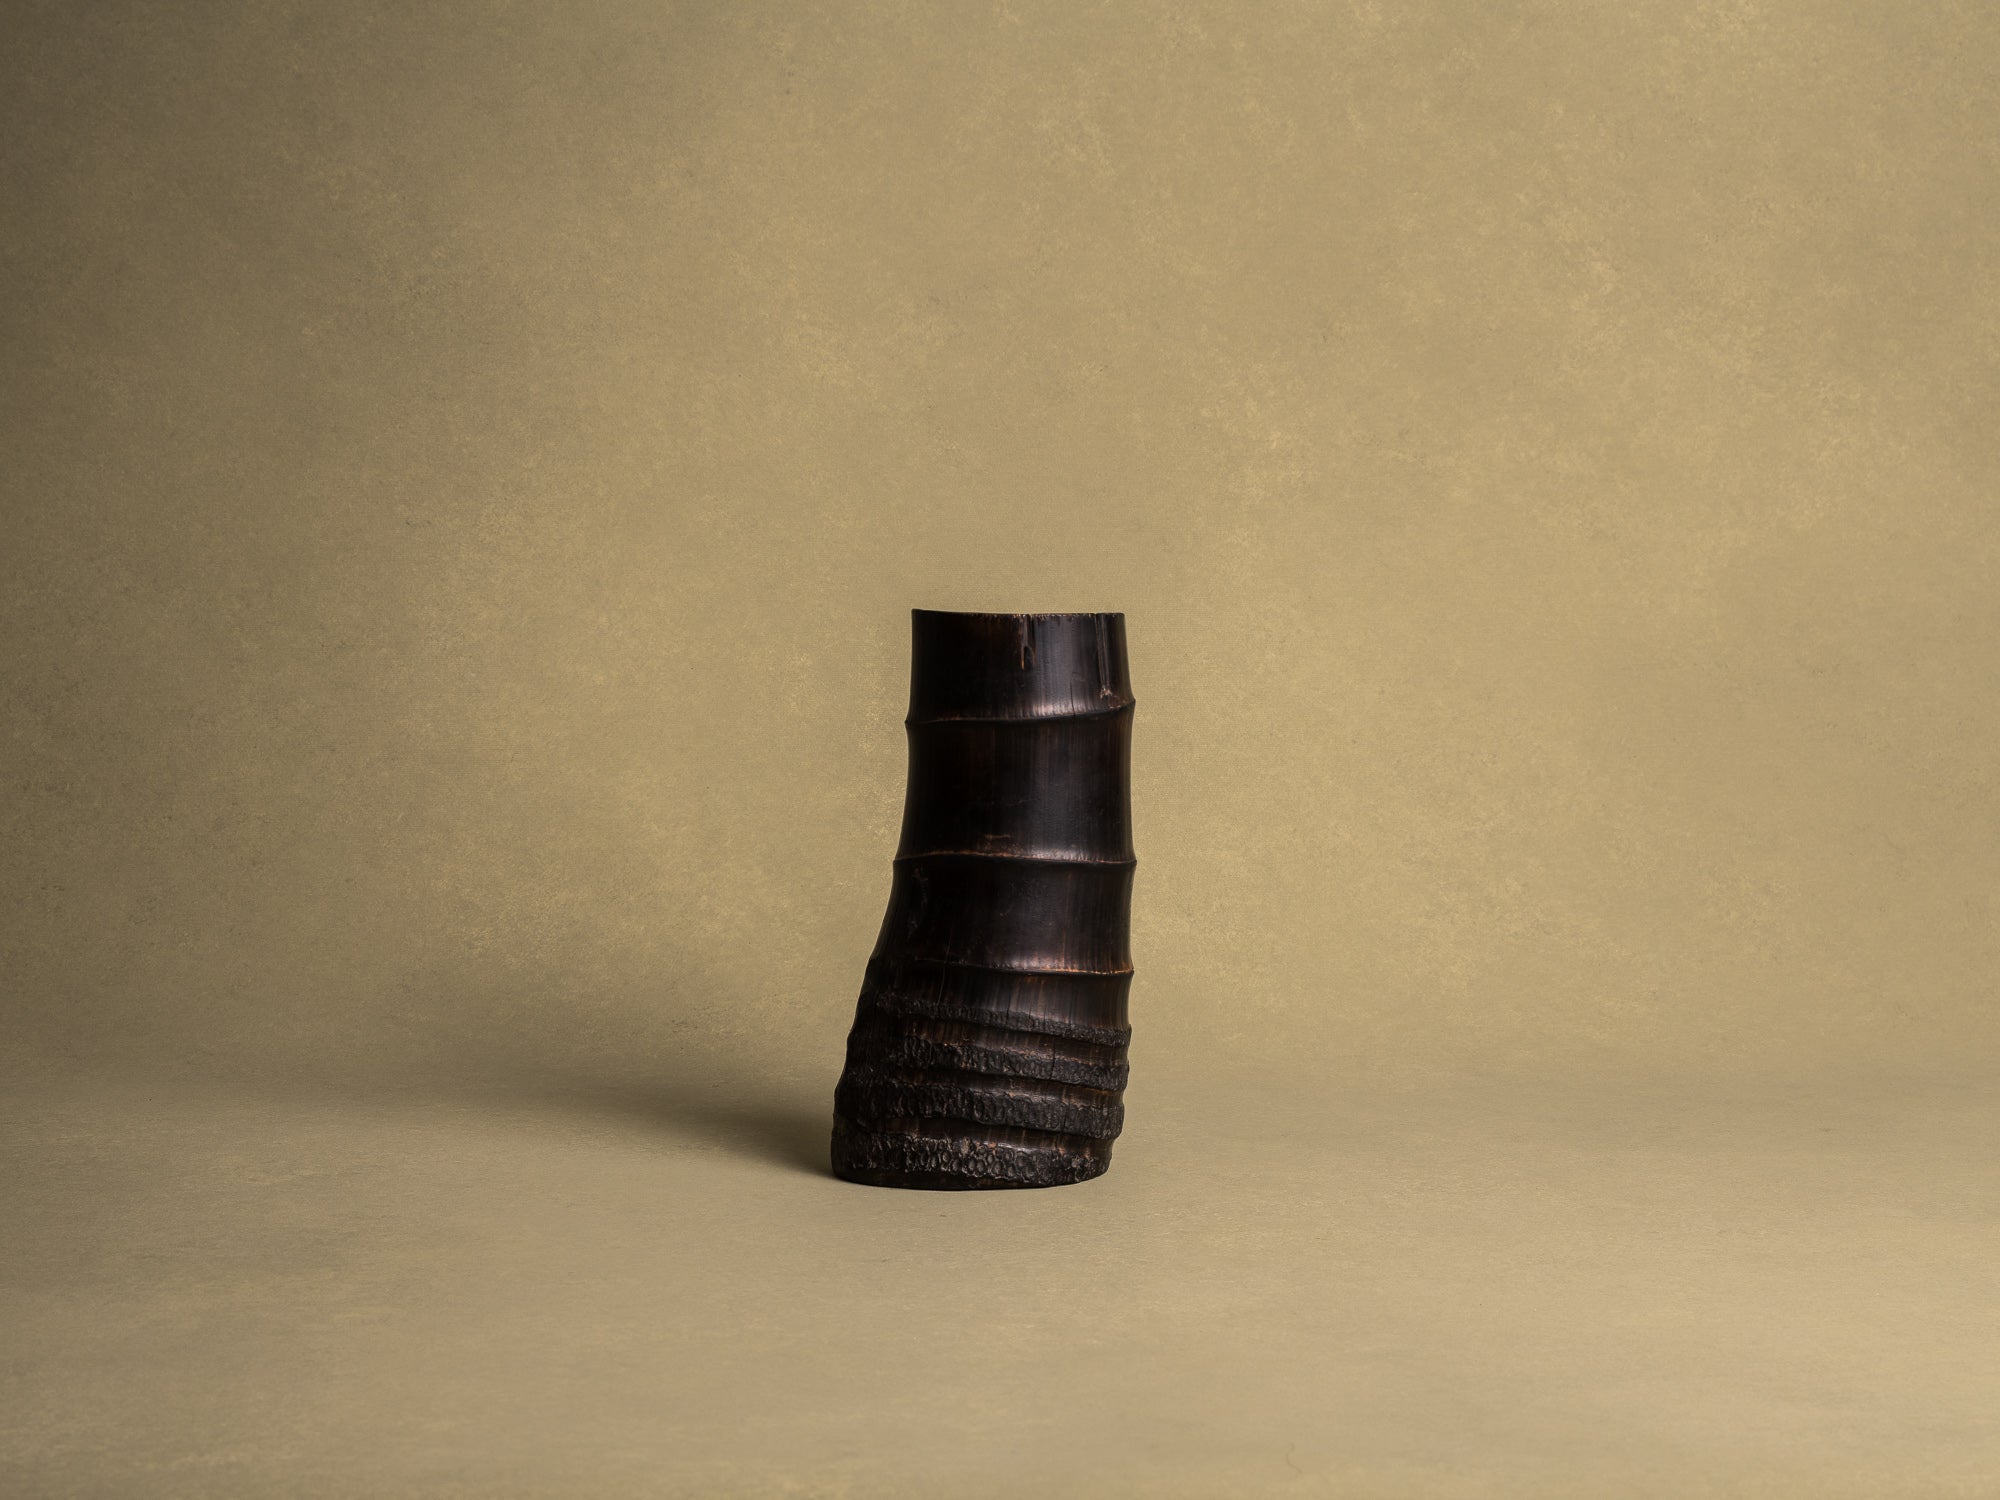 Take-zutsu hanaire, rare vase en bambou pour la cérémonie du thé à la manière de Rikyū, Japon (Période Edo)..Take-zutsu Hanaire Bamboo vase for tea ceremony chabana in the manner of Rikyū, Japan (Edo period)